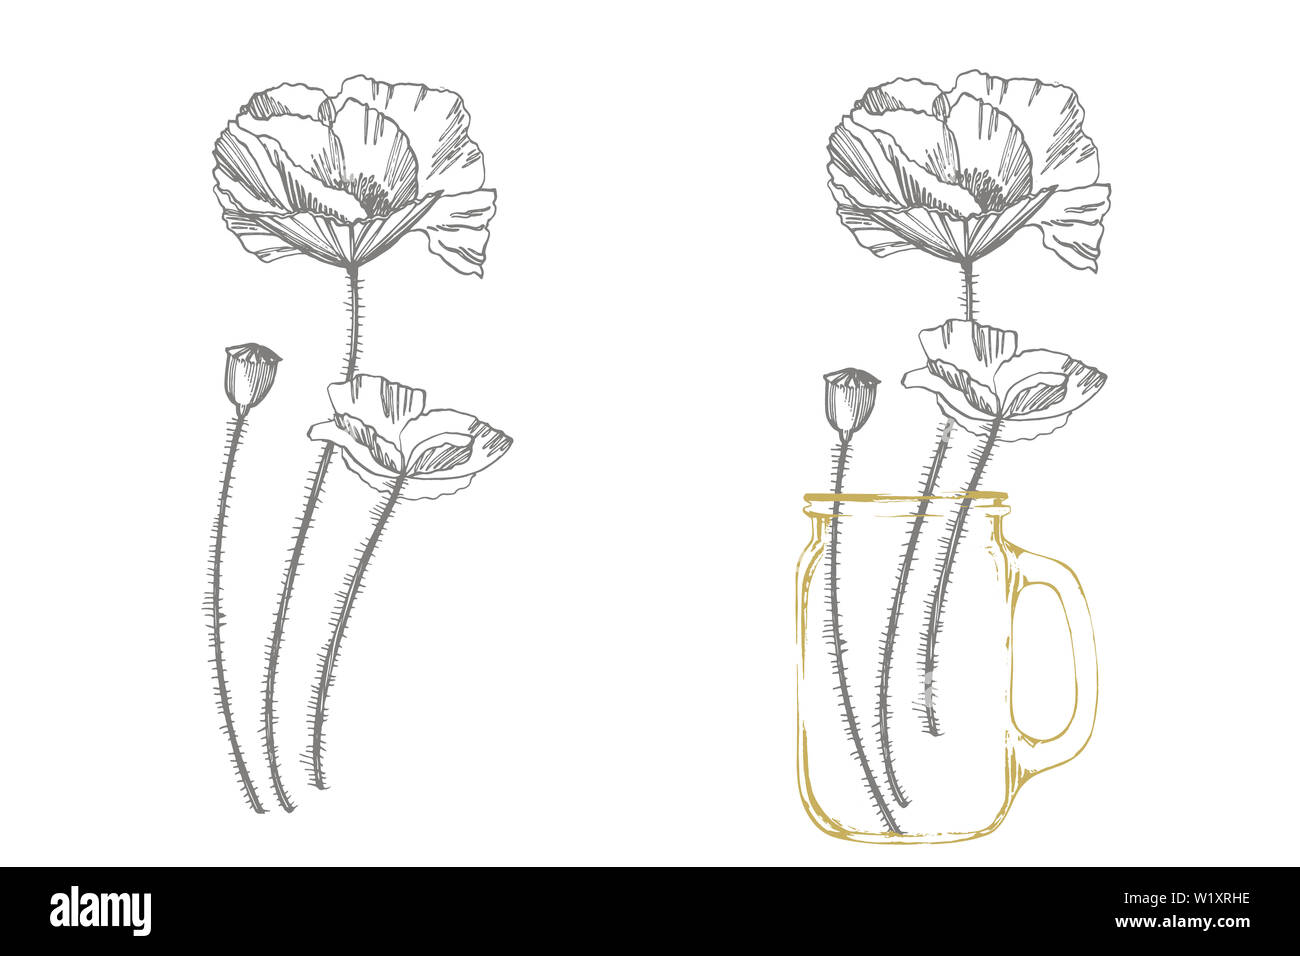 Poppy flowers. Botanical plant illustration. Vintage medicinal herbs sketch set of ink hand drawn medical herbs and plants sketch Stock Photo